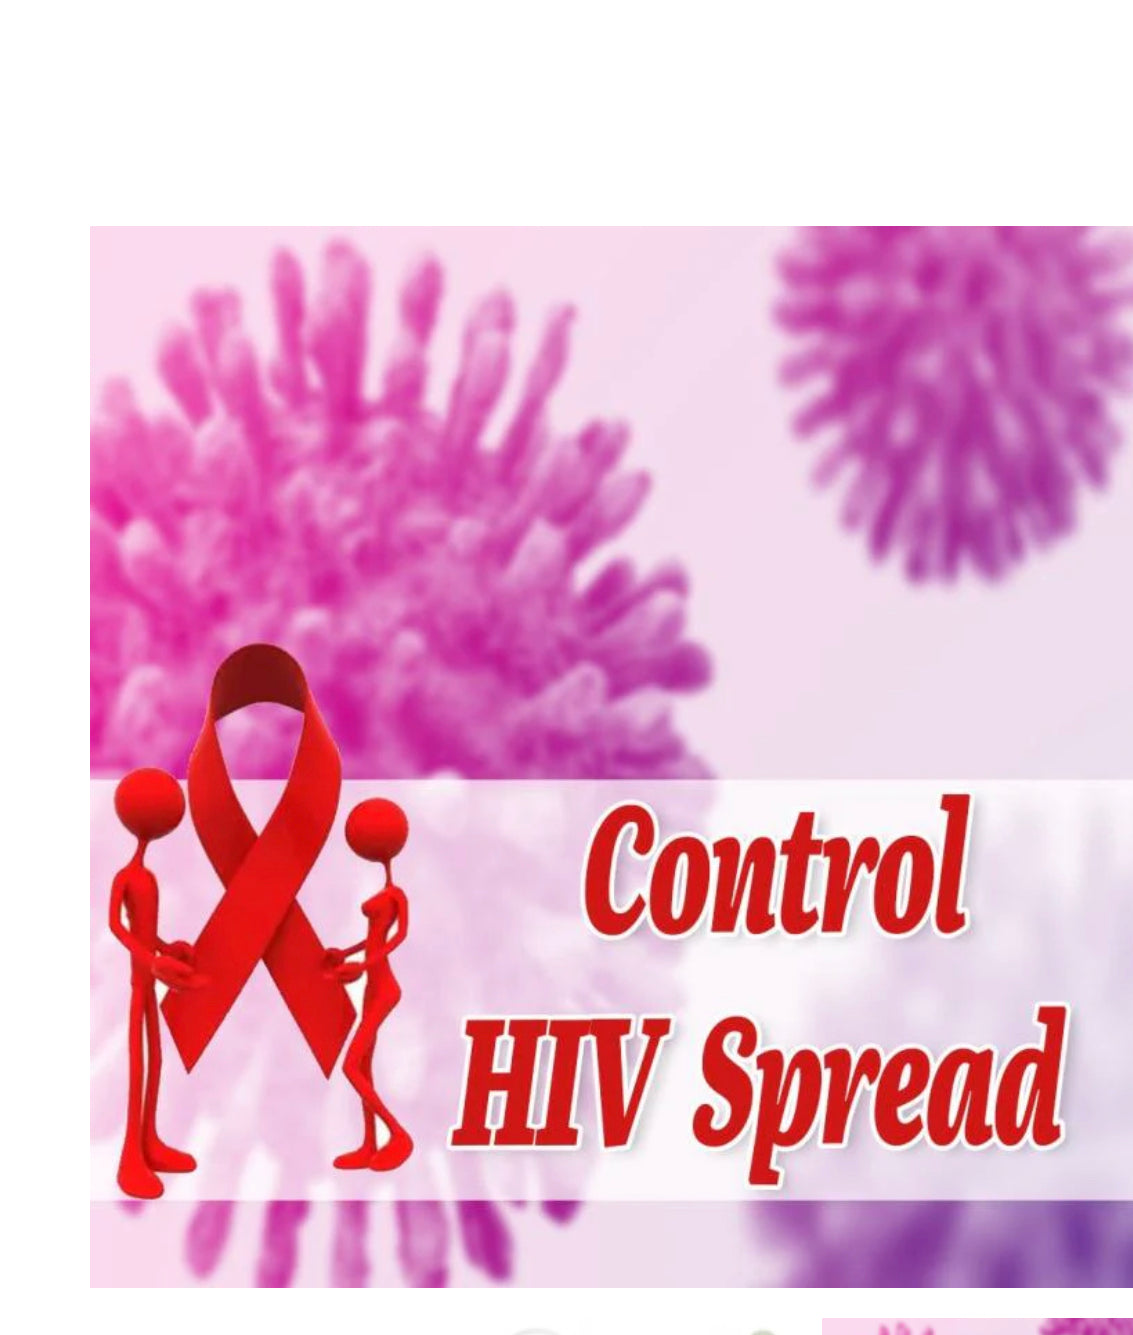 HIV Healer Kit